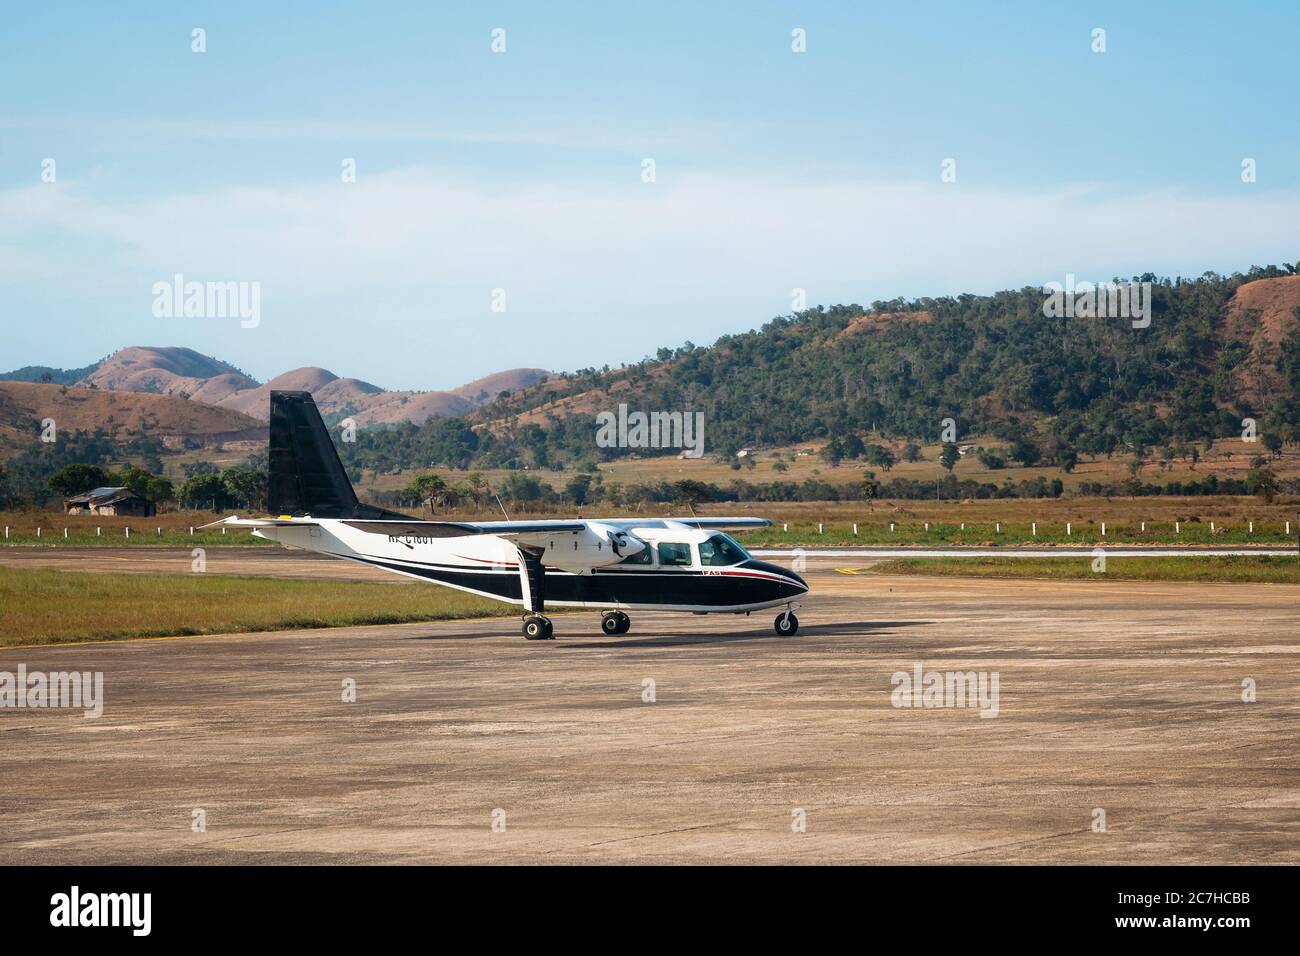 Coron, Filipinas - 29 de enero de 2019: Aviones pequeños privados Britten-Norman BN-2A-21 Islander Aircraft en el Aeropuerto Francisco B. Reyes. Foto de stock